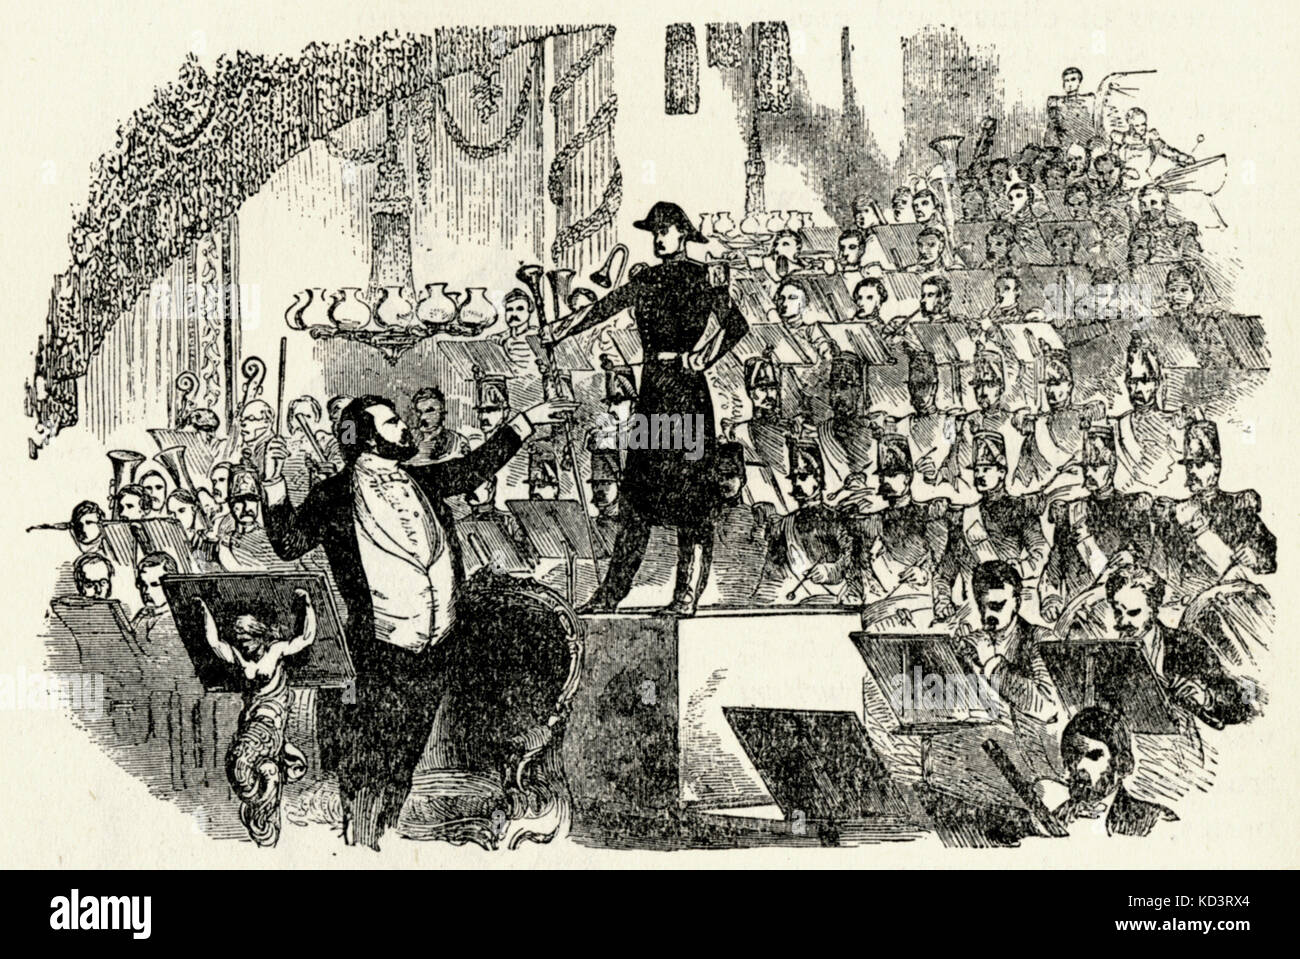 Orchester des 19. Jahrhunderts - Untertitel lautet: "jullien's Orchestra und der französischen Corps de Pauken an der Drury Lane, 1850." Jullien, französischer Komponist, ursprünglich Louis Antoine Julien. Stockfoto